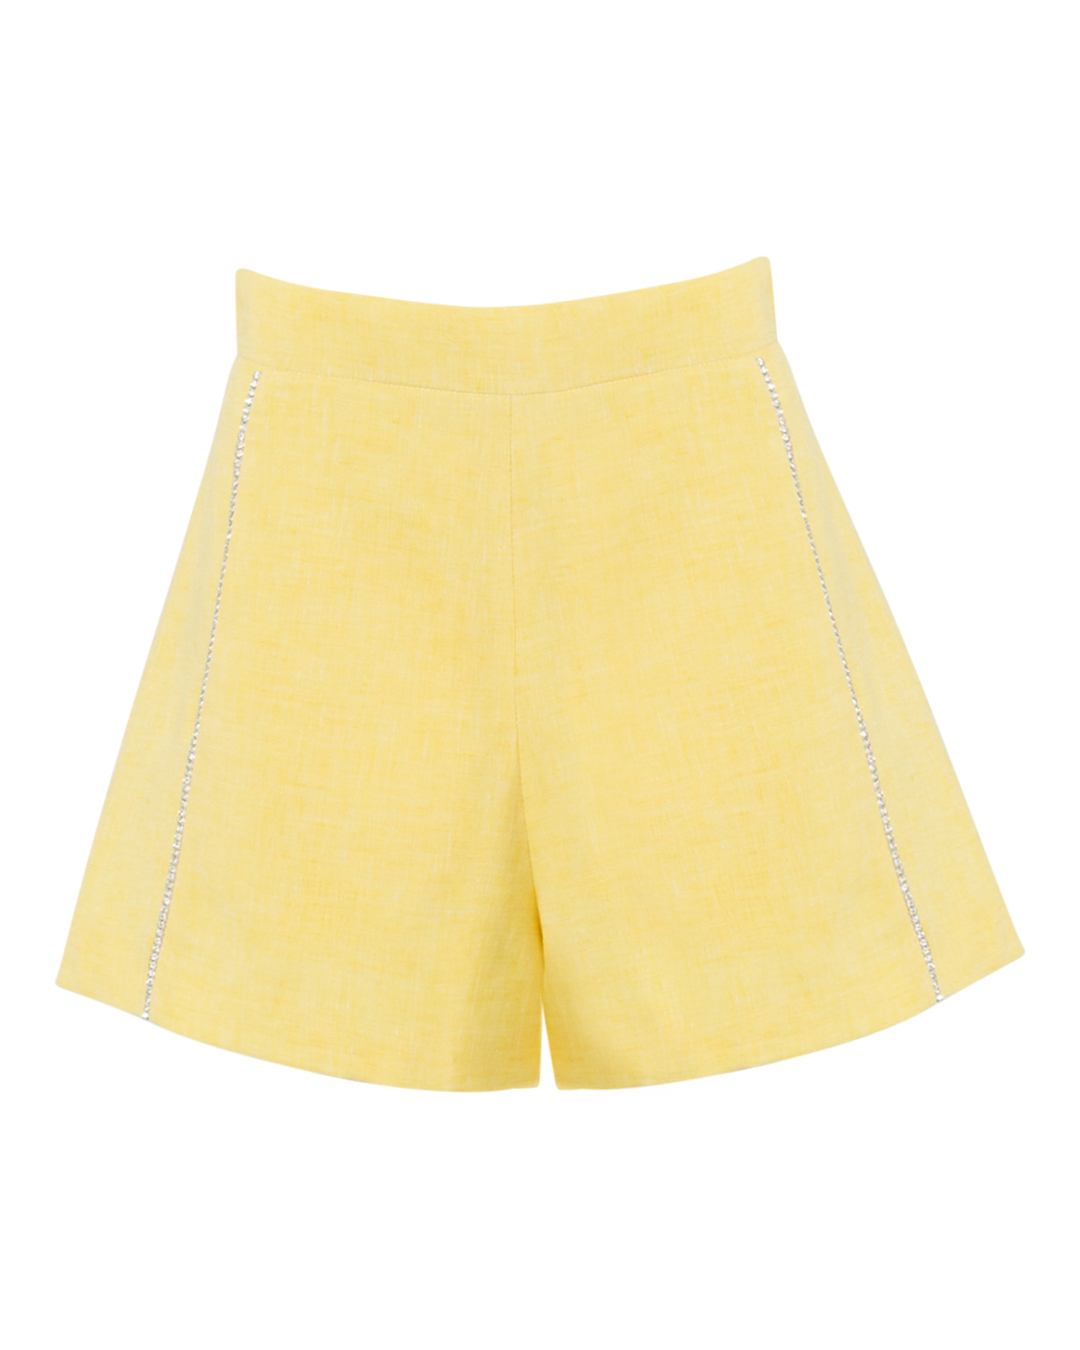 шорты Forte Dei Marmi Couture 23SF6808 желтый 44, размер 44